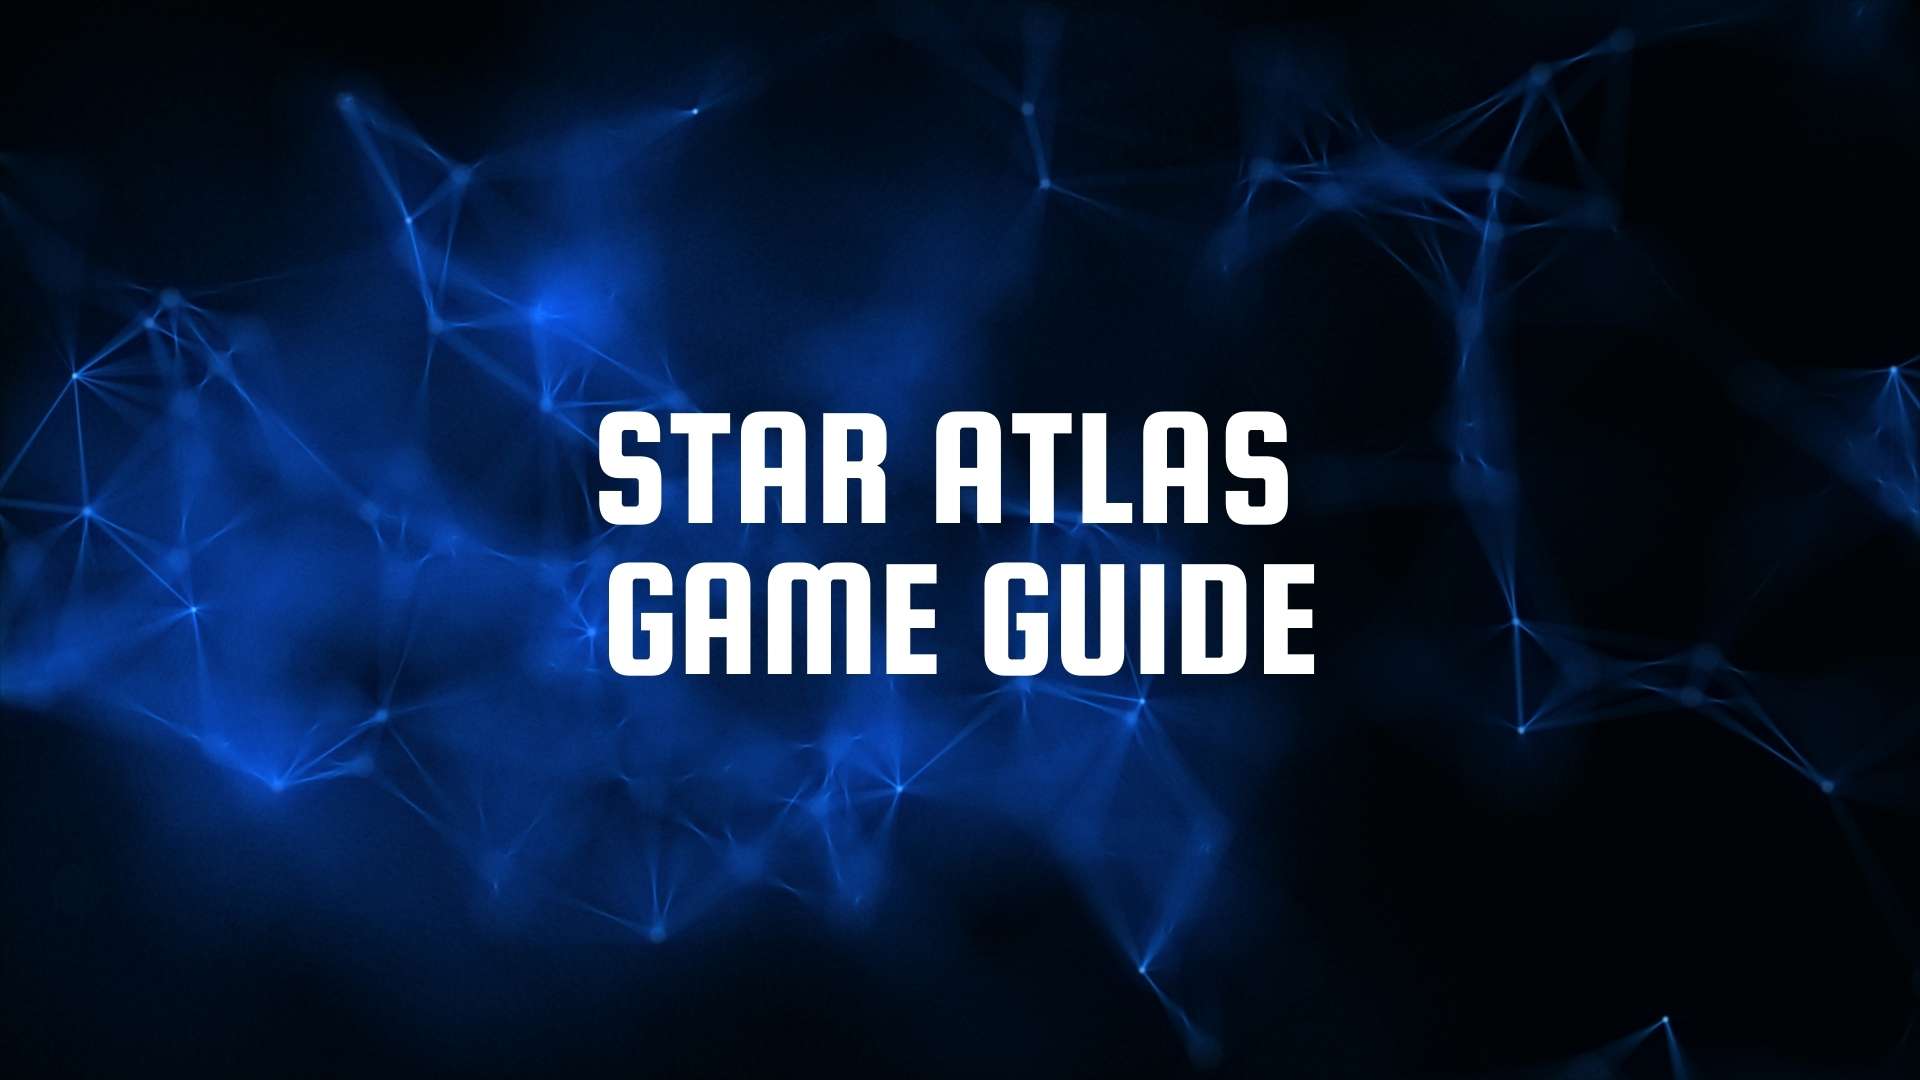 Star Atlas NFT Game Guide